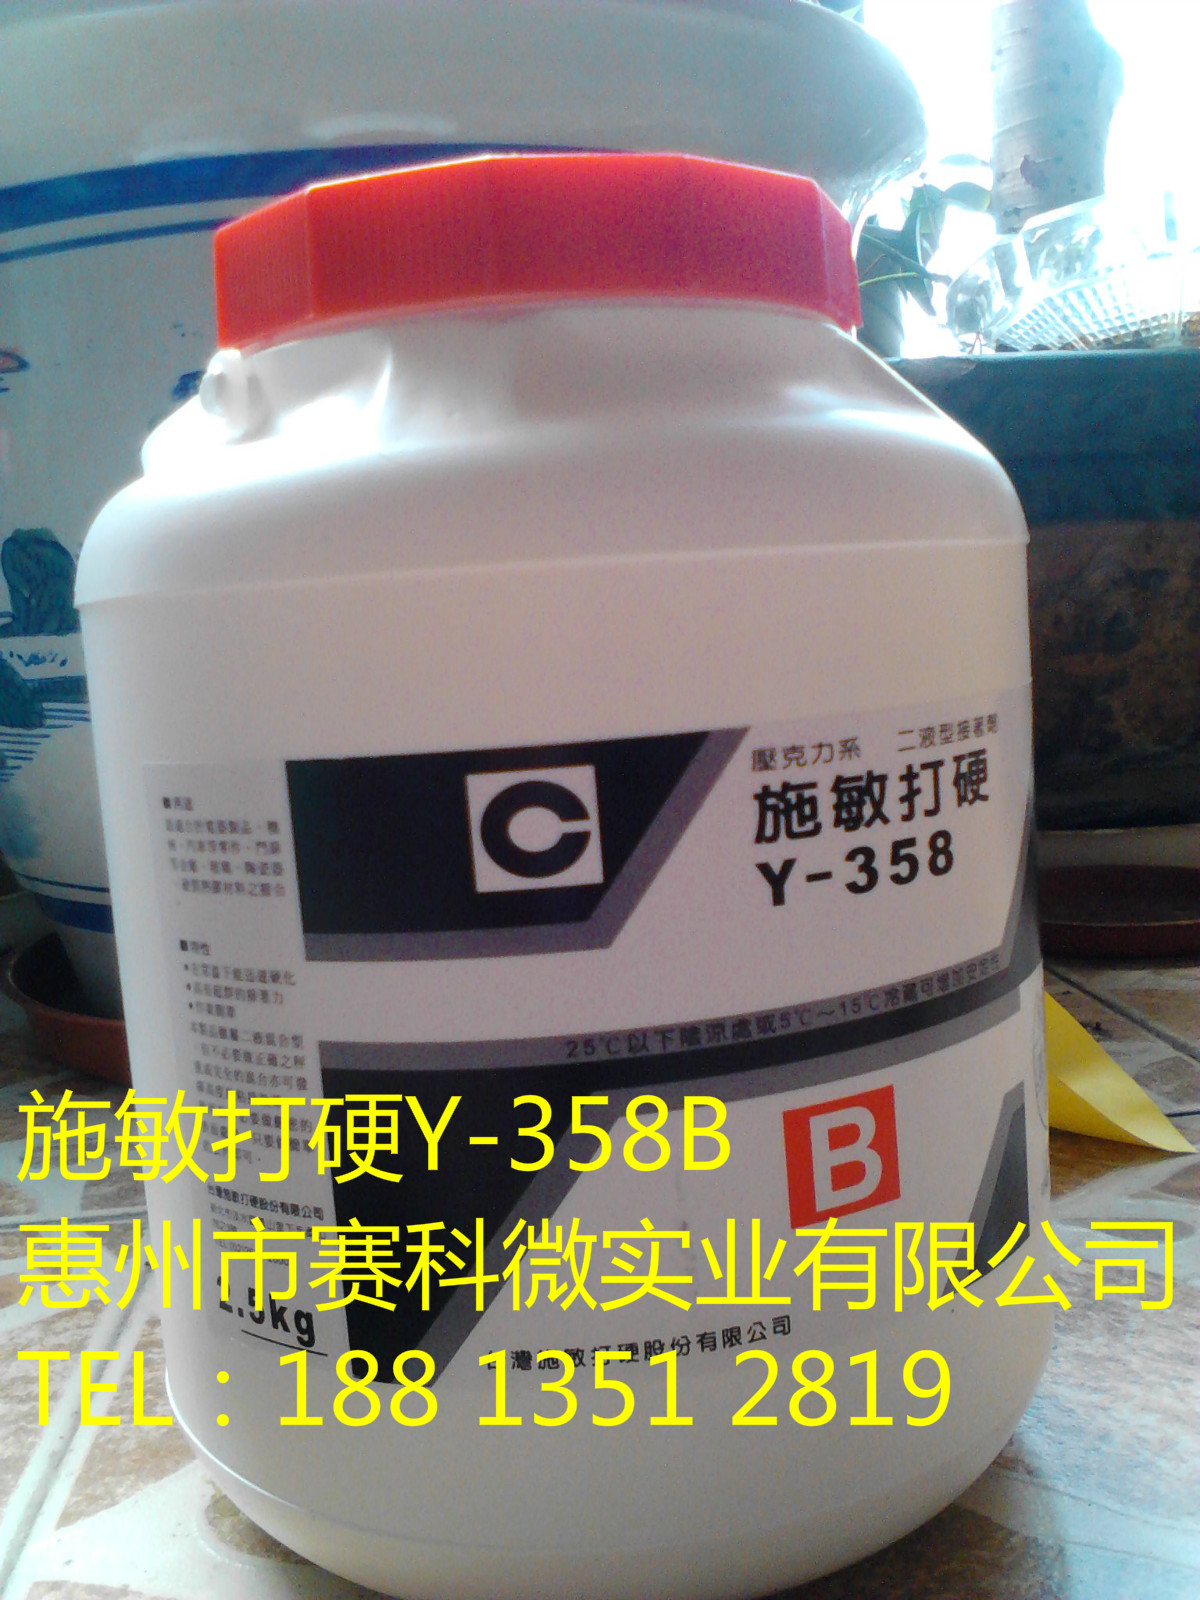 惠州市台湾施敏打硬Y-358ab磁路胶厂家